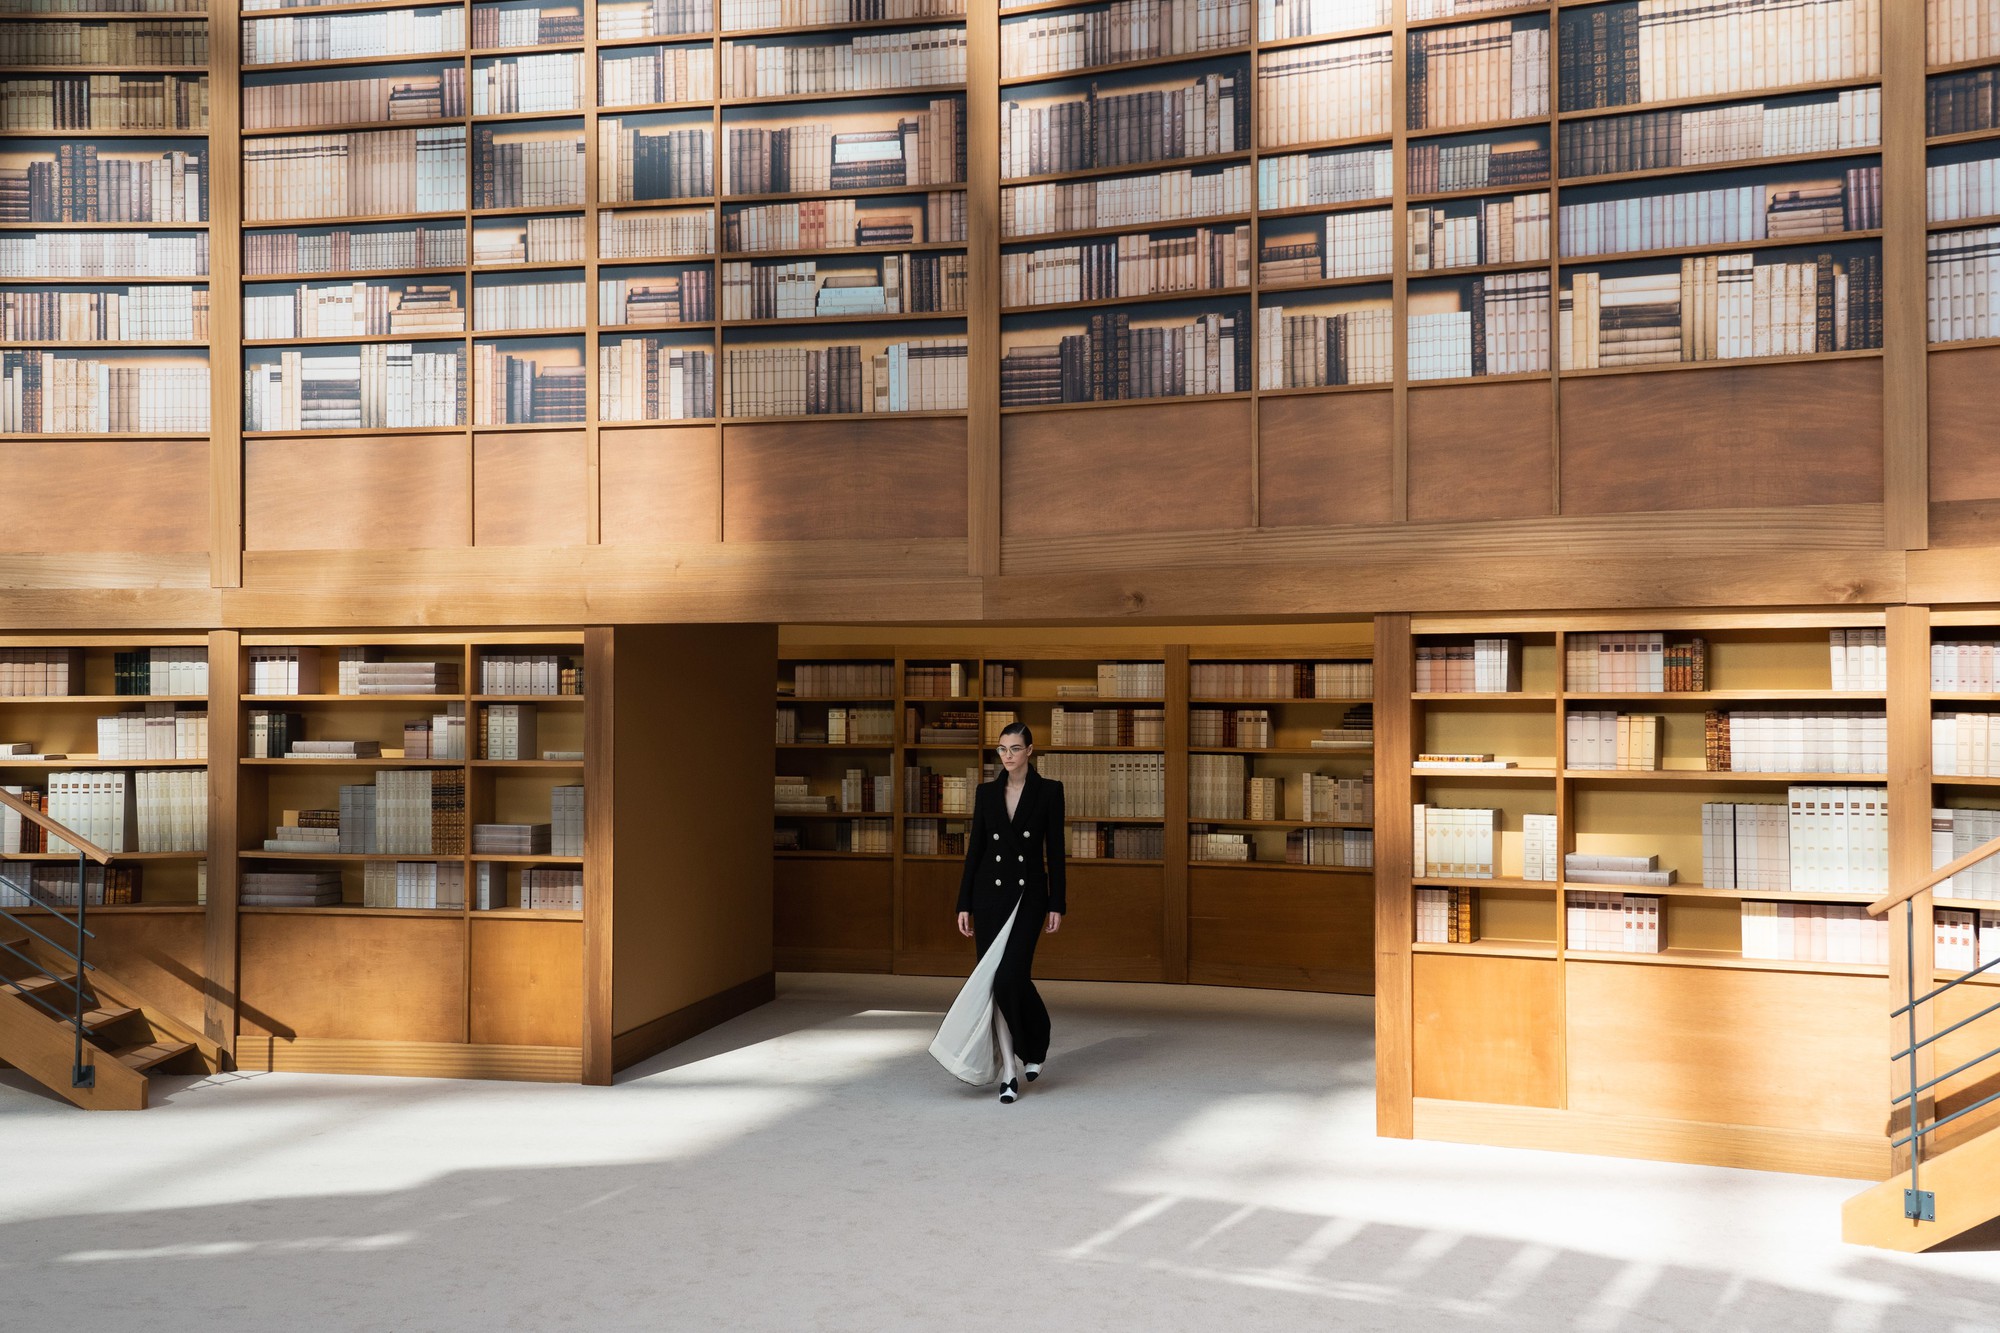 Lên đồ kiểu tomboyloichoi, Châu Tấn chẳng ngán bị lọt thỏm giữa thư viện khổng lồ của Chanel - Ảnh 3.